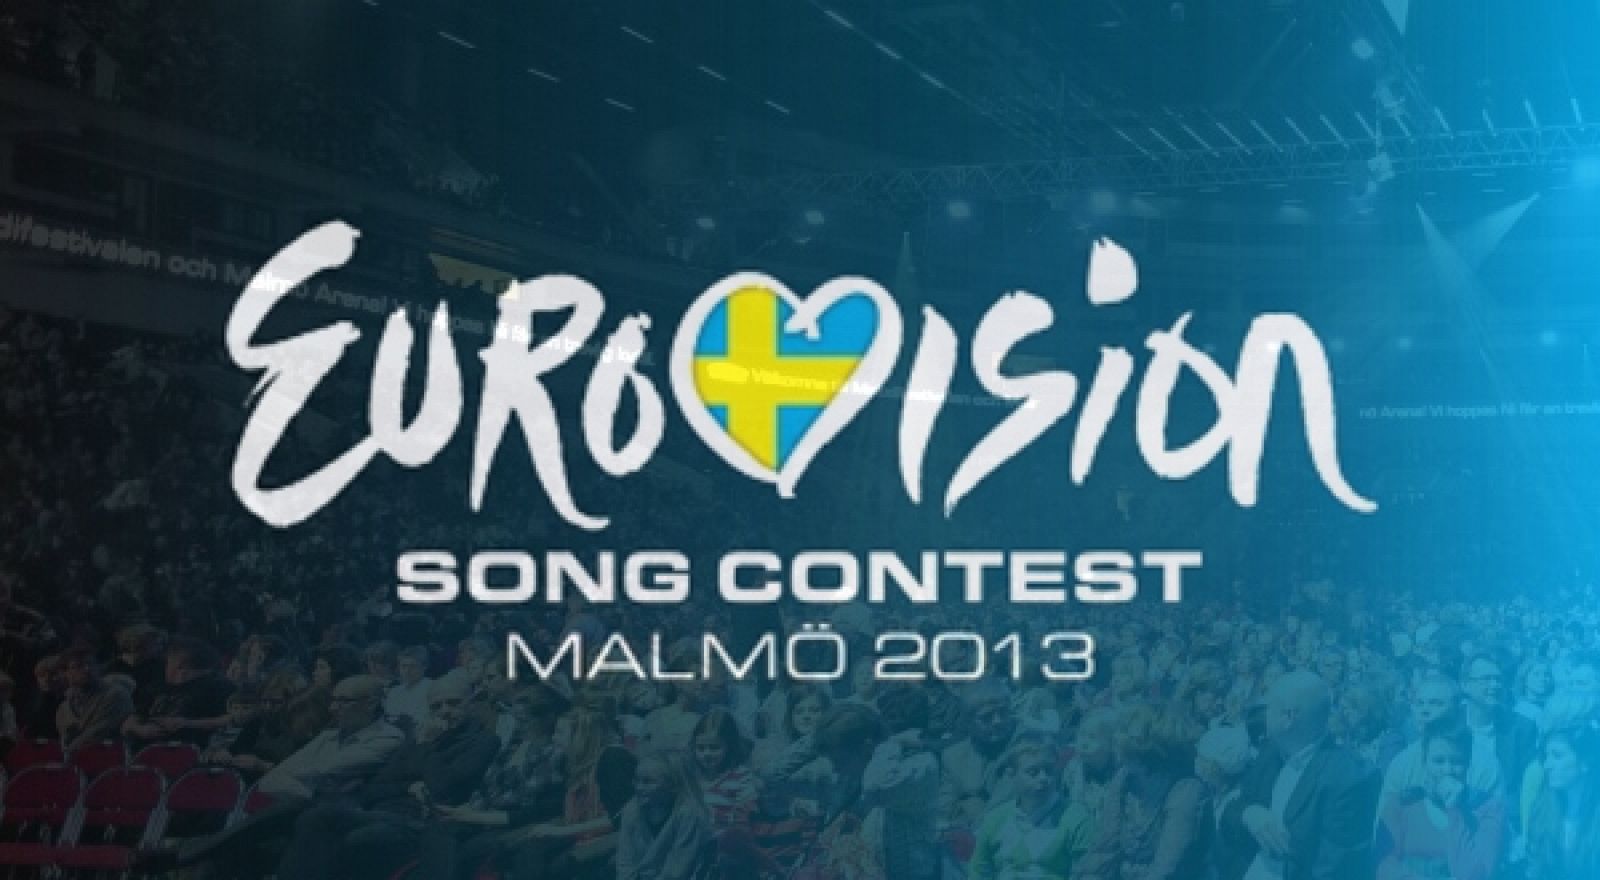 El Festival de Eurovisión 2013 se celebra en Malmö (Suecia) los días 14, 16 y 18 de mayo.